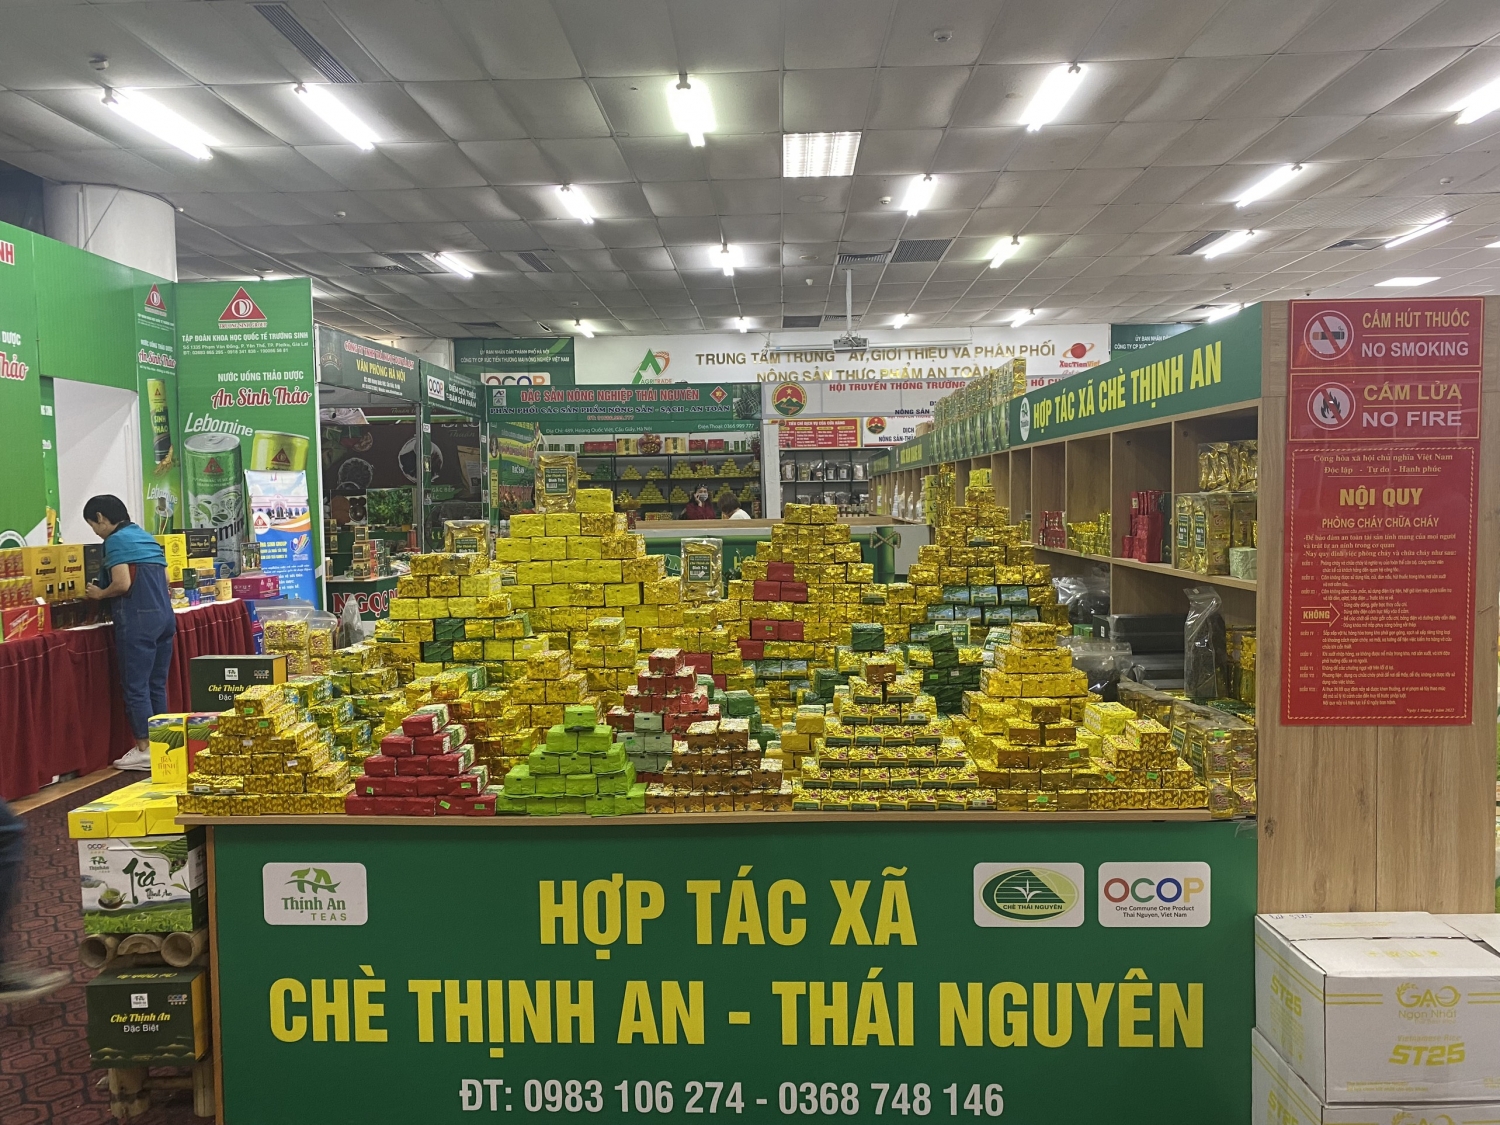 HTX Chè Thịnh An tham gia hội chợ làng nghề và sản phẩm OCOP, giới thiệu chè ngon từ vùng "đệ nhất chè Thái Nguyên"